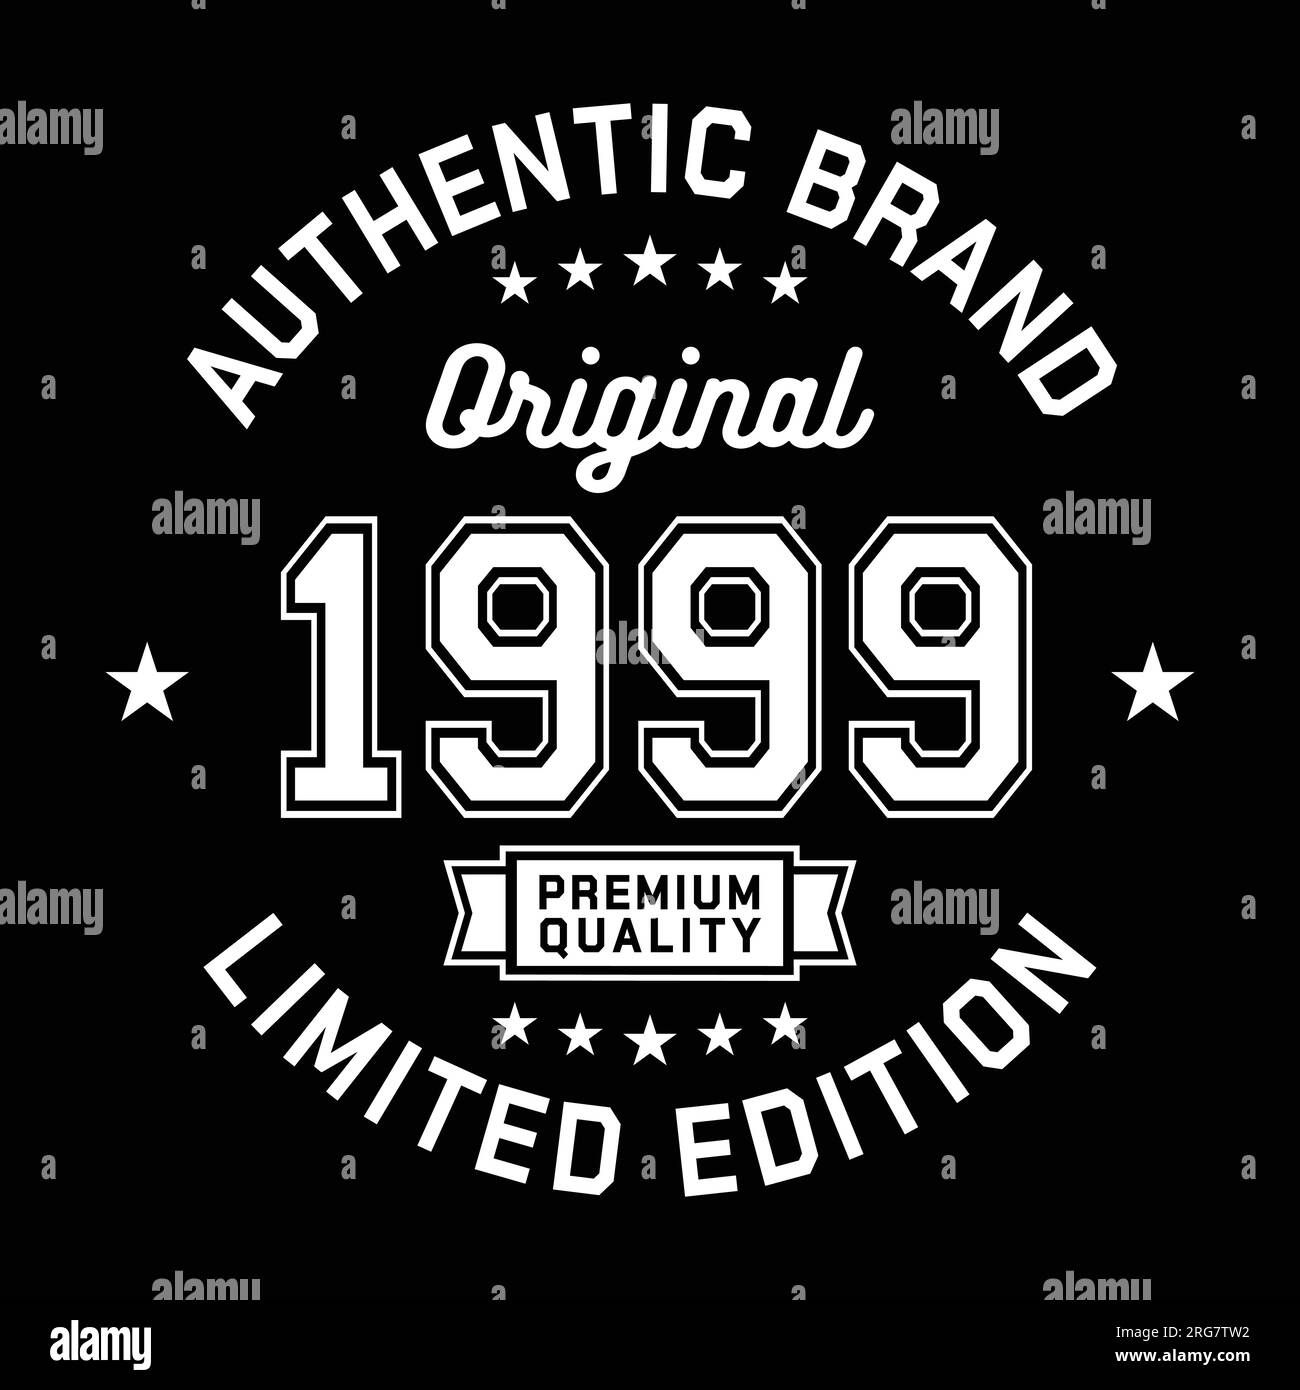 1999 authentische Marke. Modisches Bekleidungsdesign. Grafikdesign für T-Shirt. Vektor und Illustration. Stock Vektor